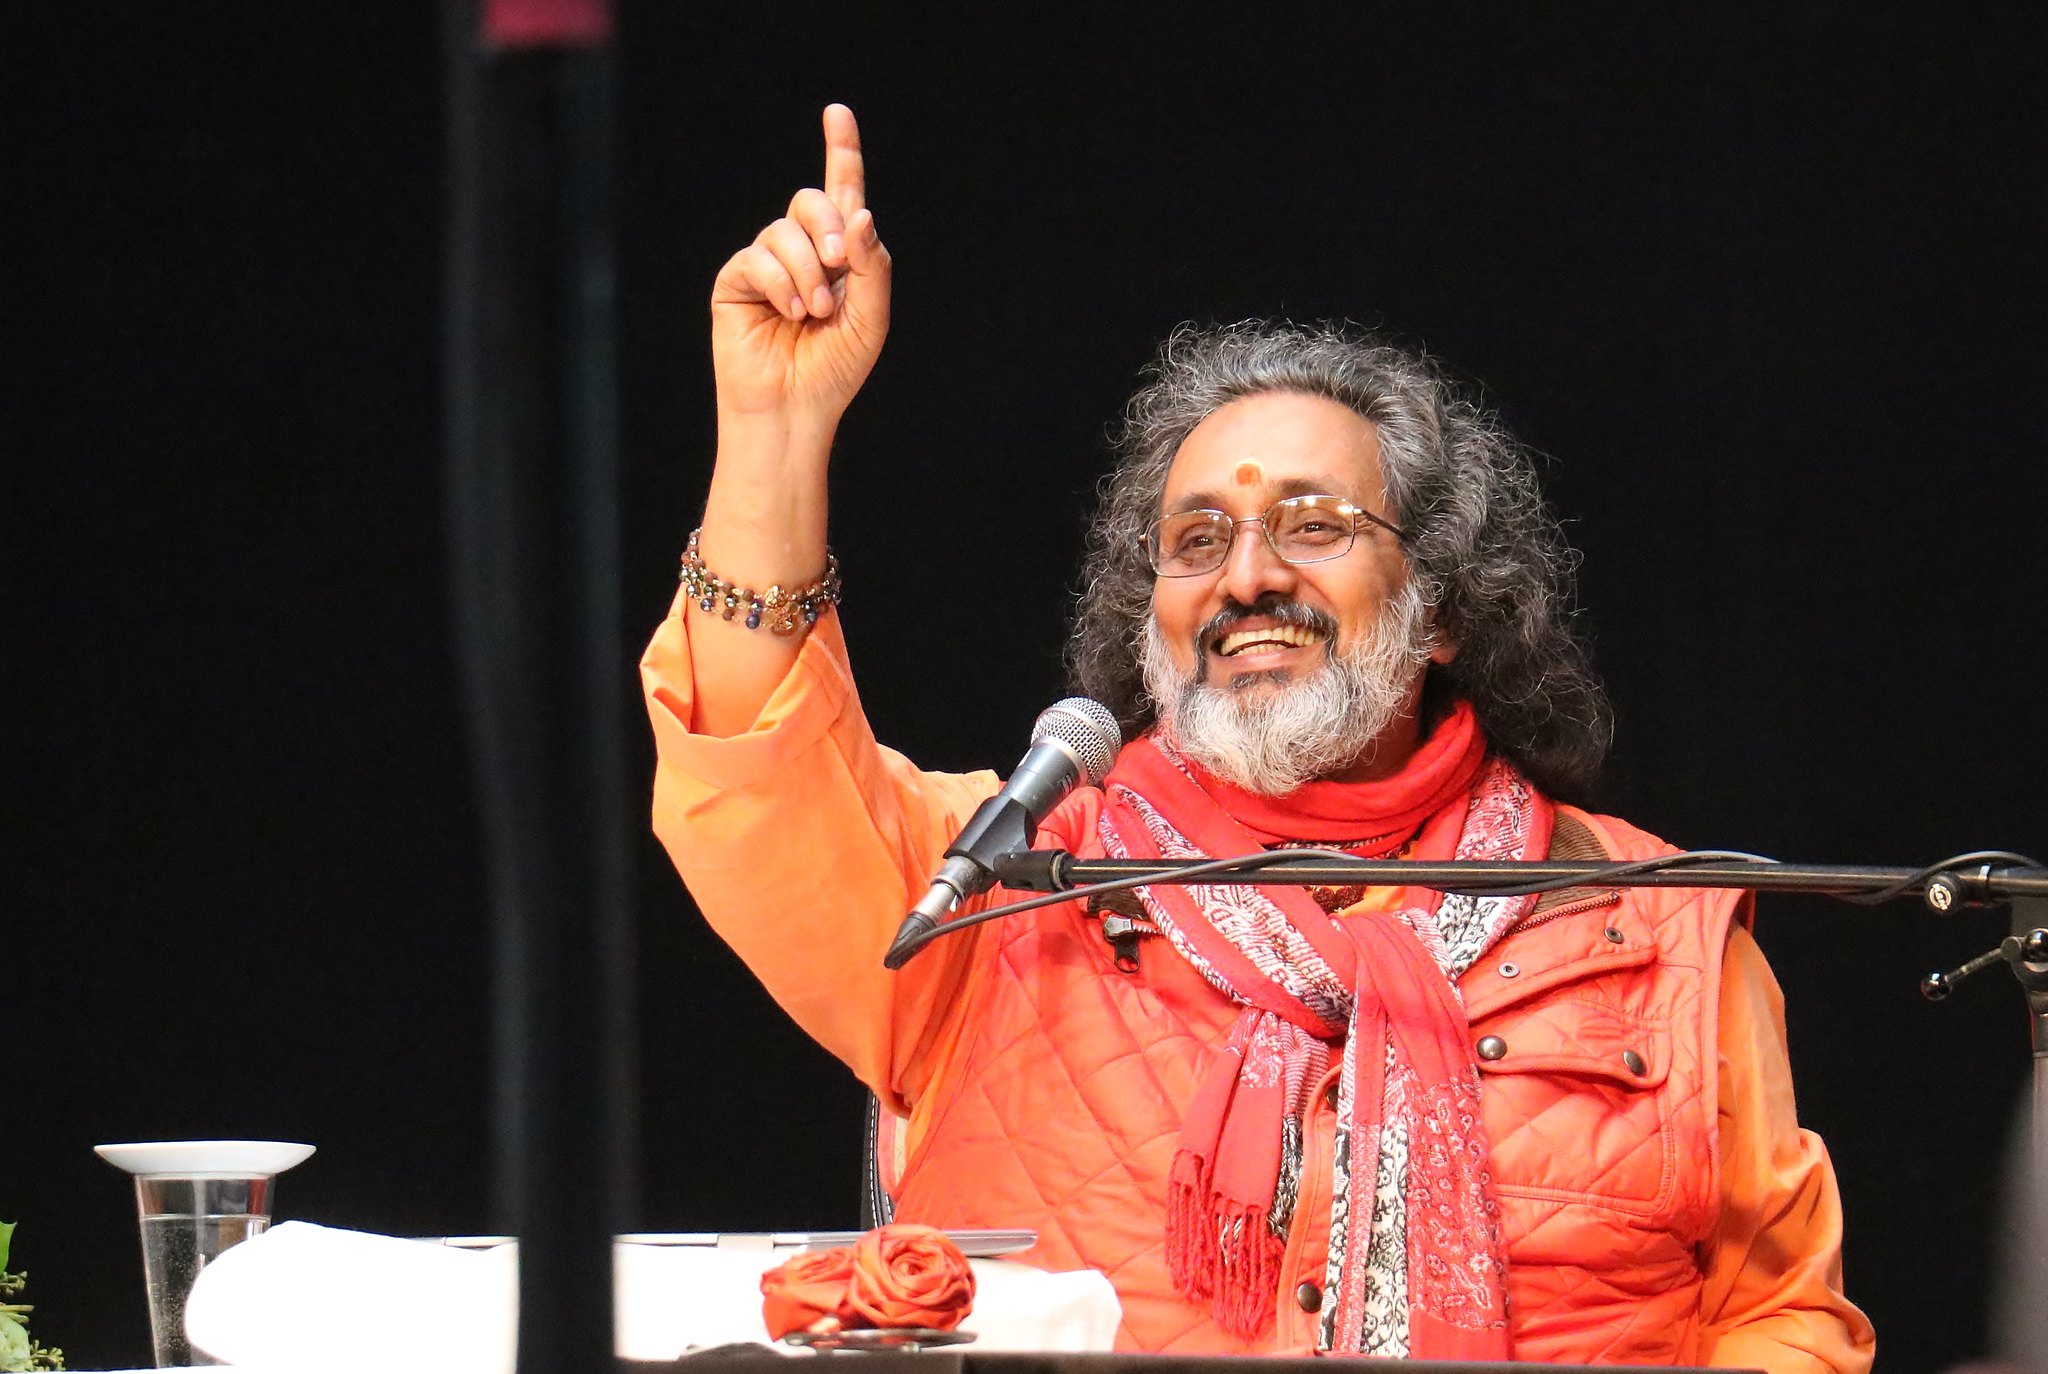 Charla de Swami Amritaswarupananda Puri en la cumbre de 2018